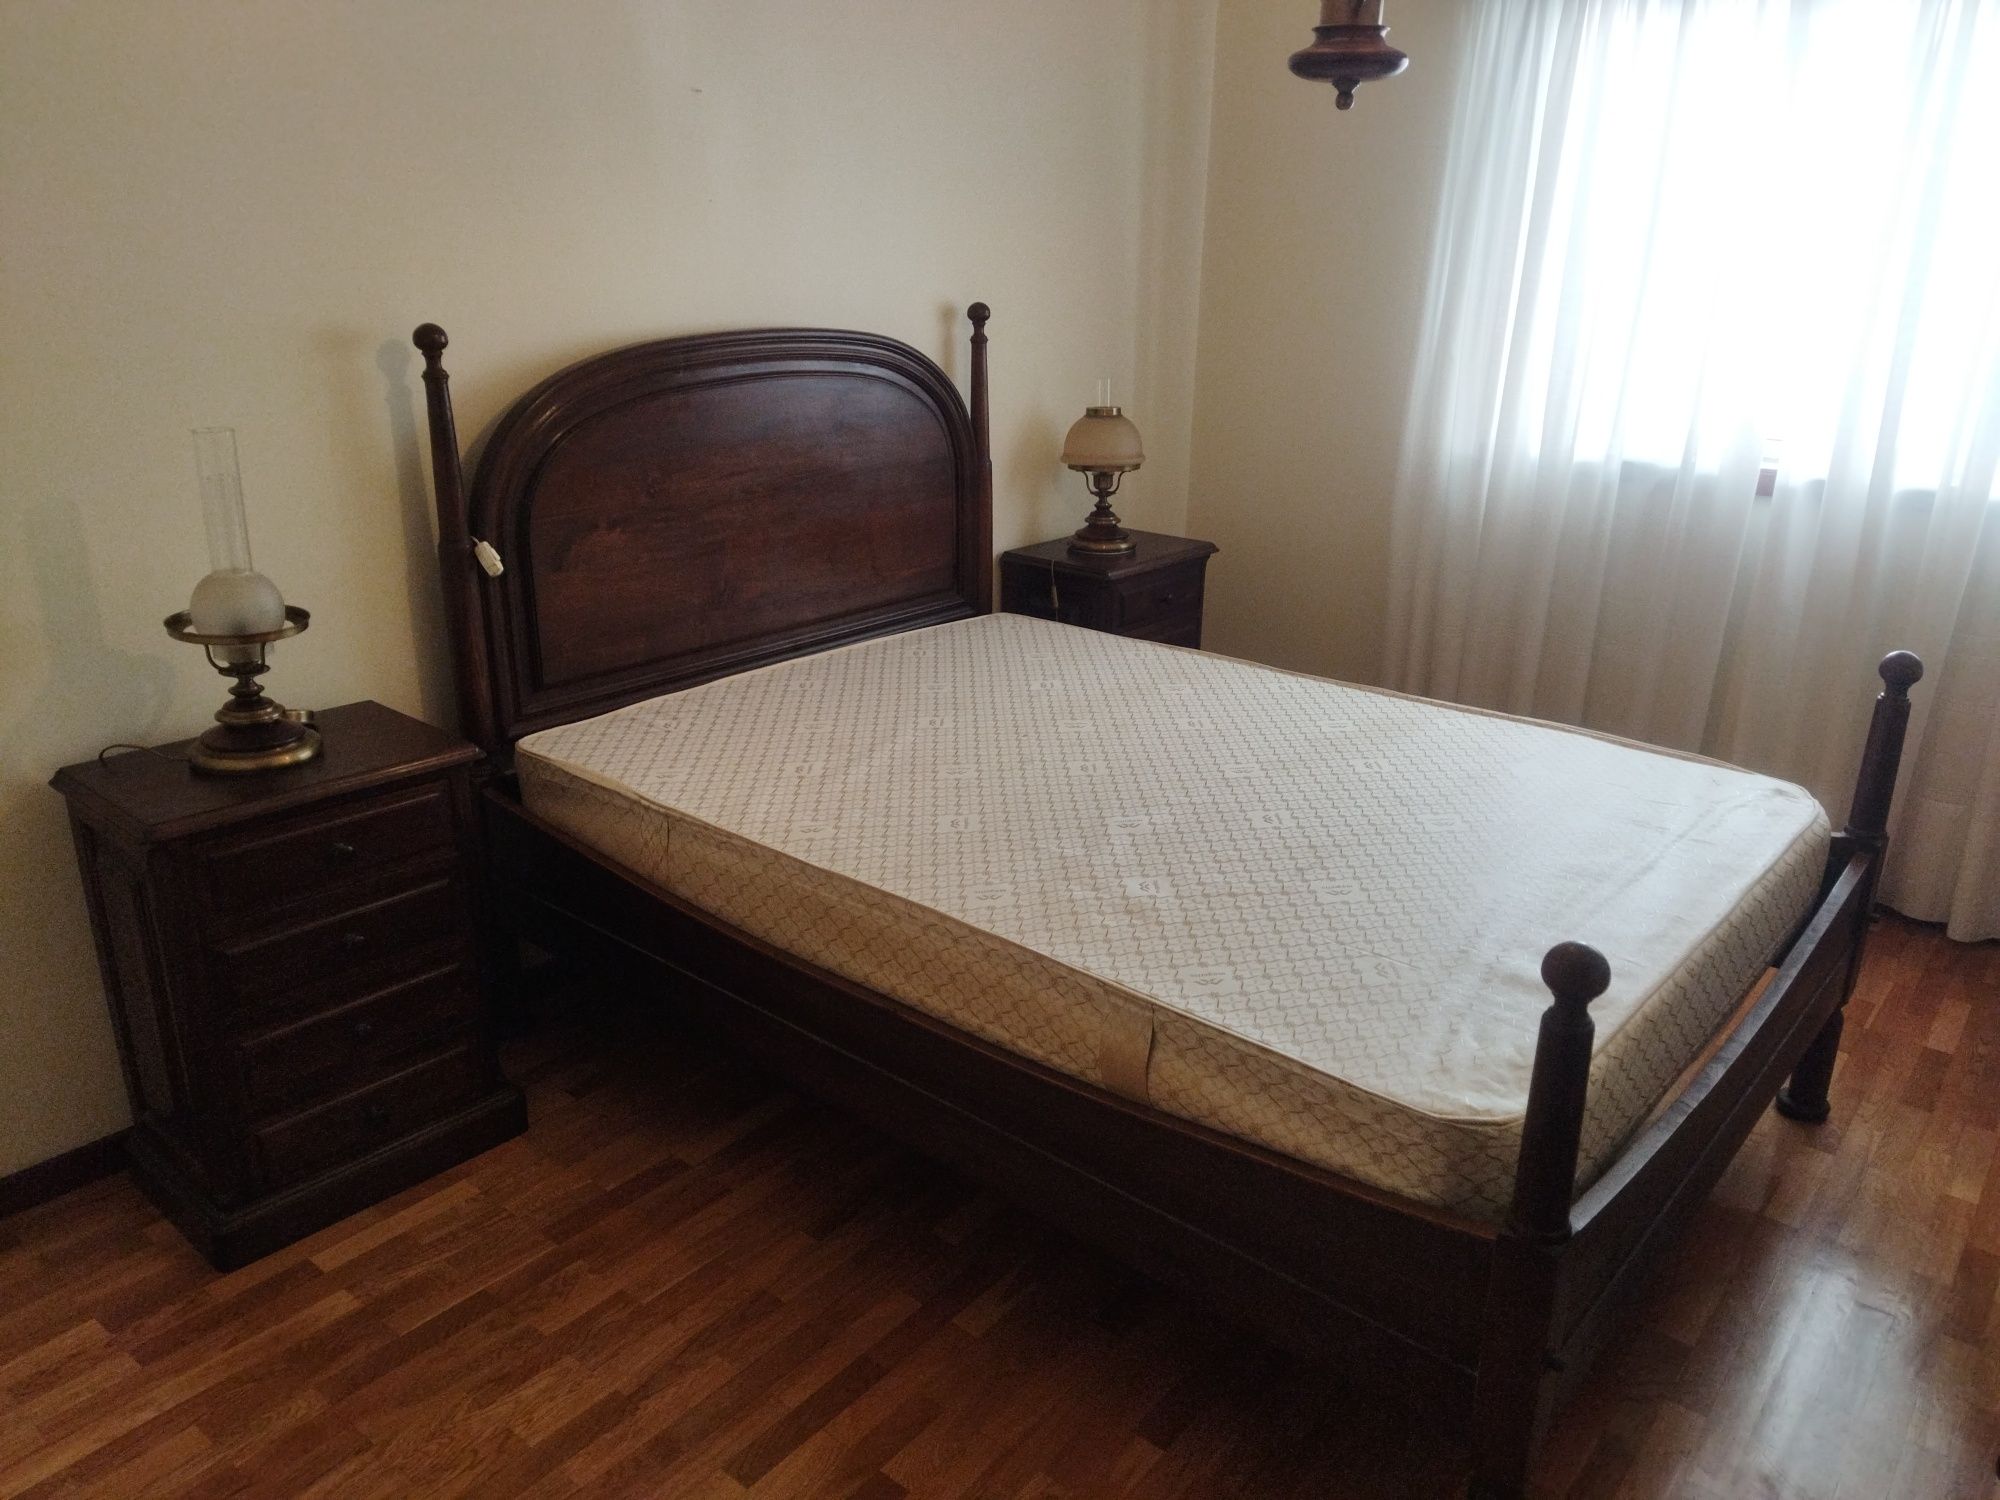 Vendo cama em madeira com mesas de cabeceira e colchão magnético